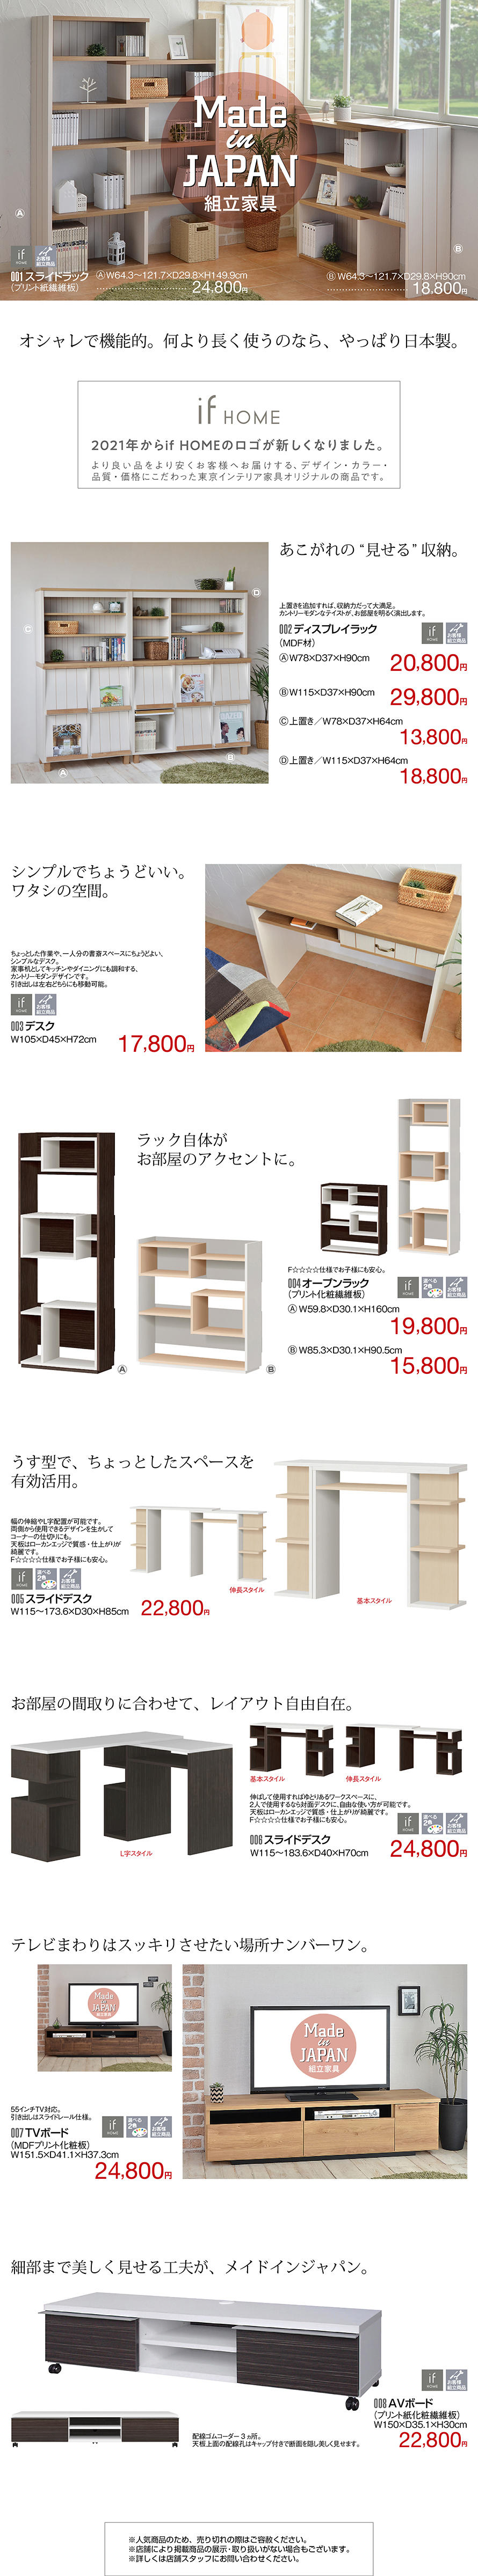 Made In Japan 組立家具 東京インテリア家具オフィシャルサイト 家具とホームファッション